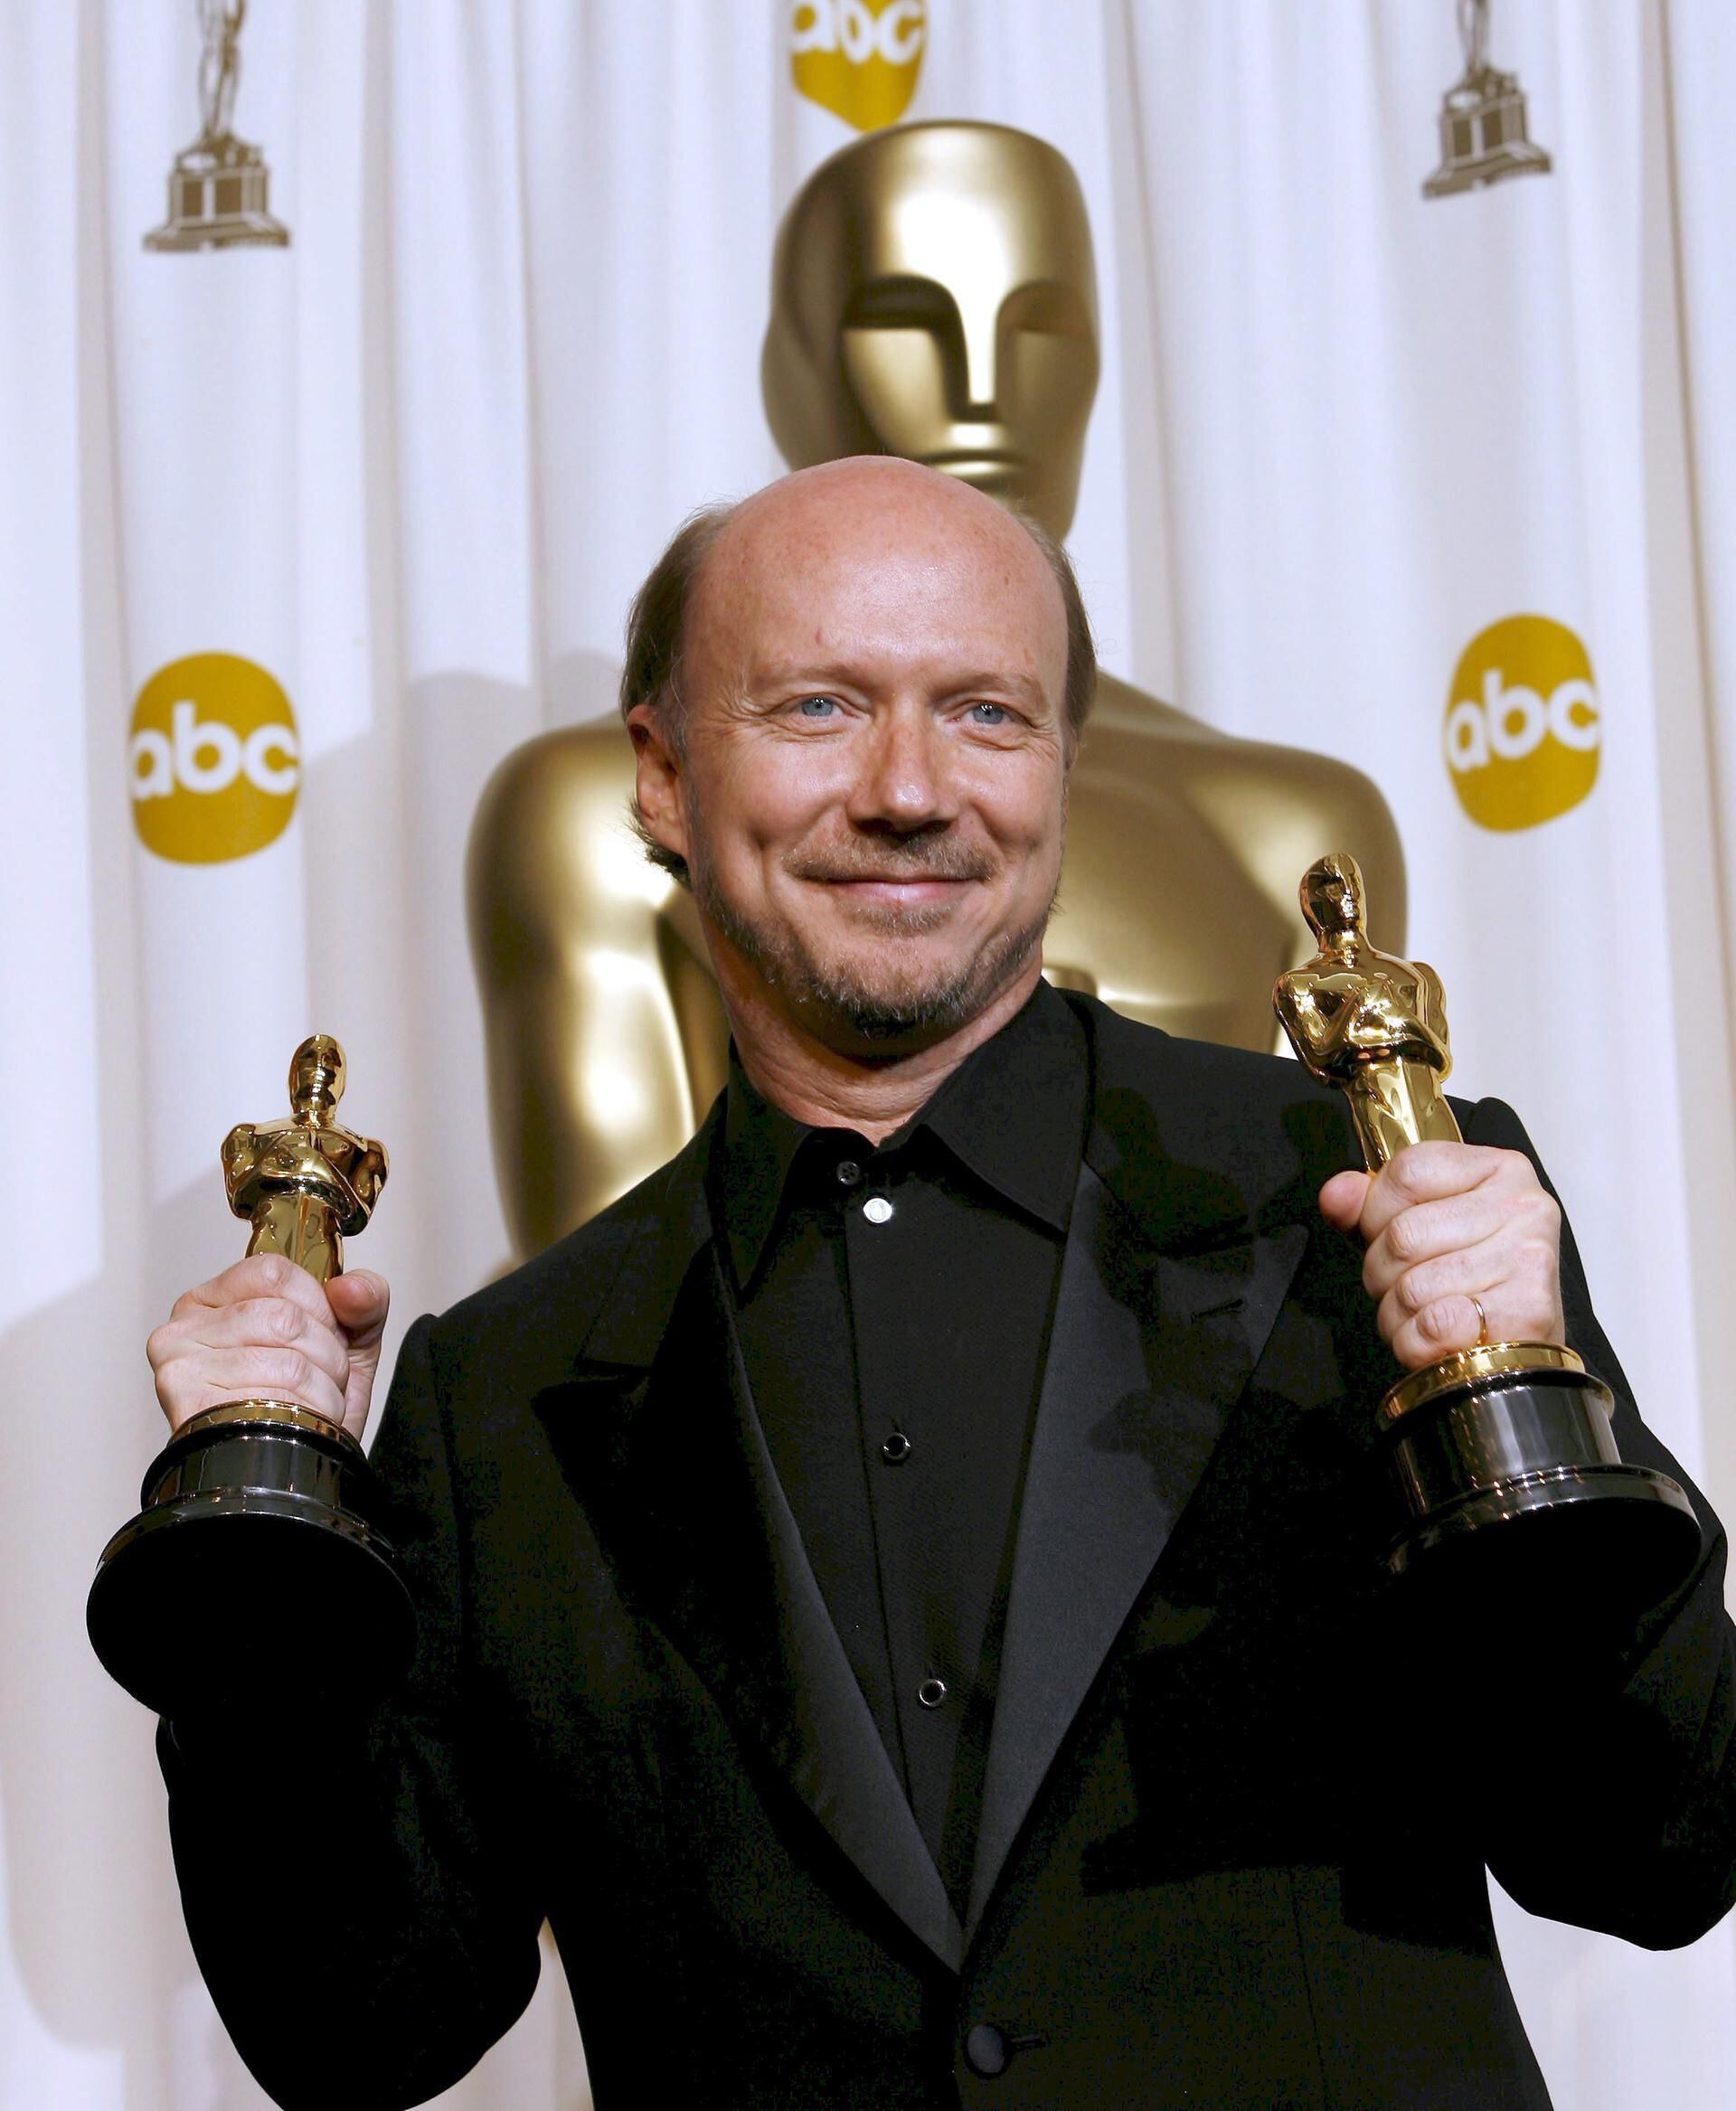 Paul Haggis: Crash didn't deserve best picture Oscar